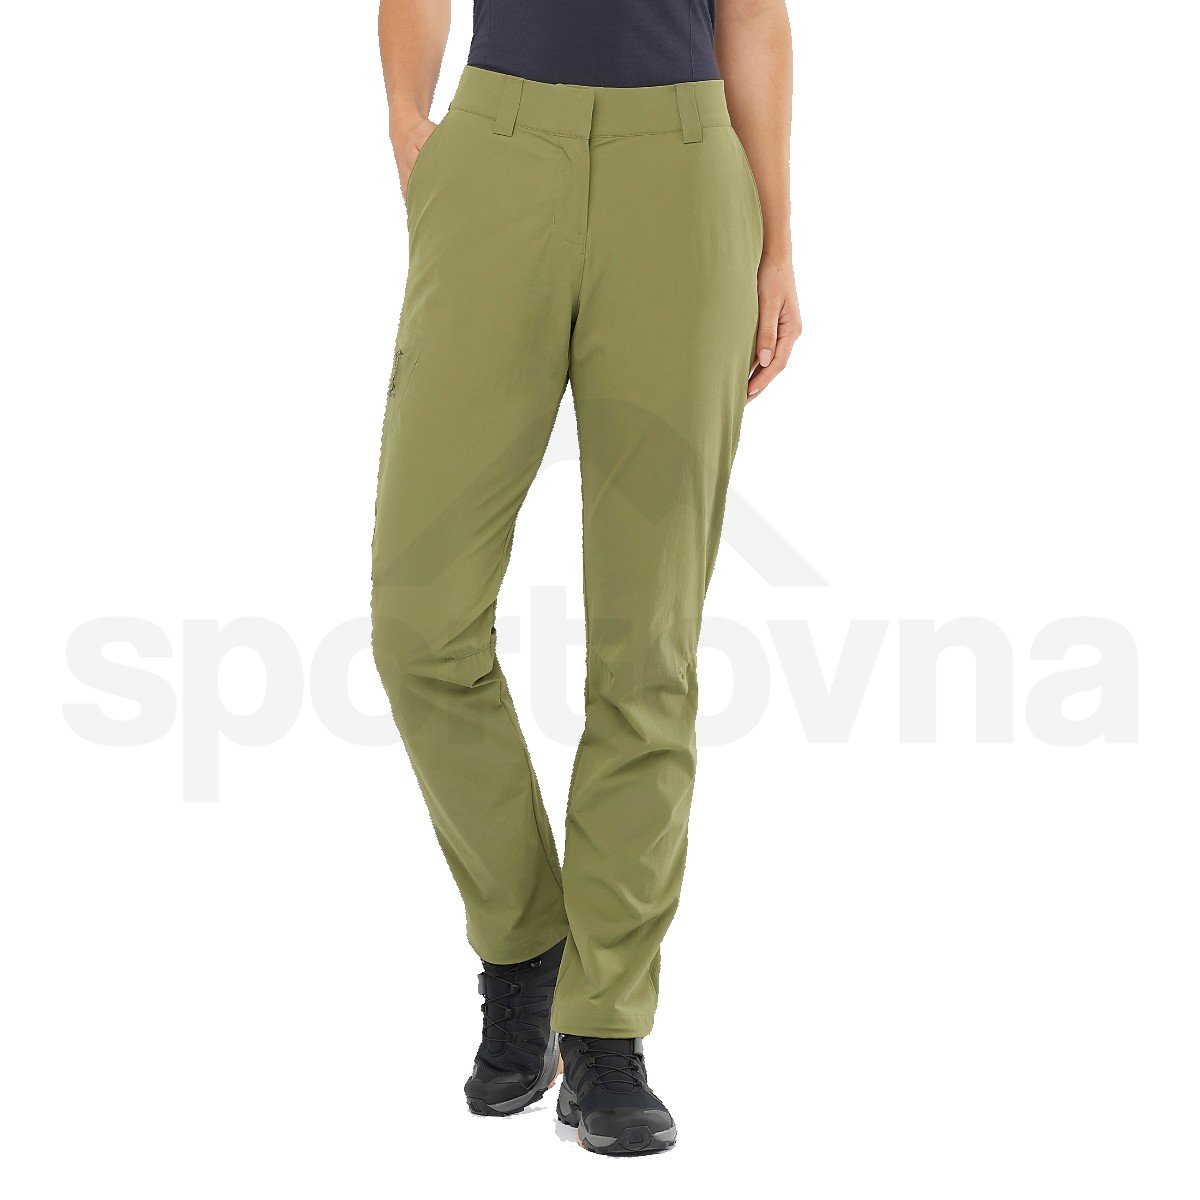 Kalhoty Salomon Wayfarer Pants W - zelená